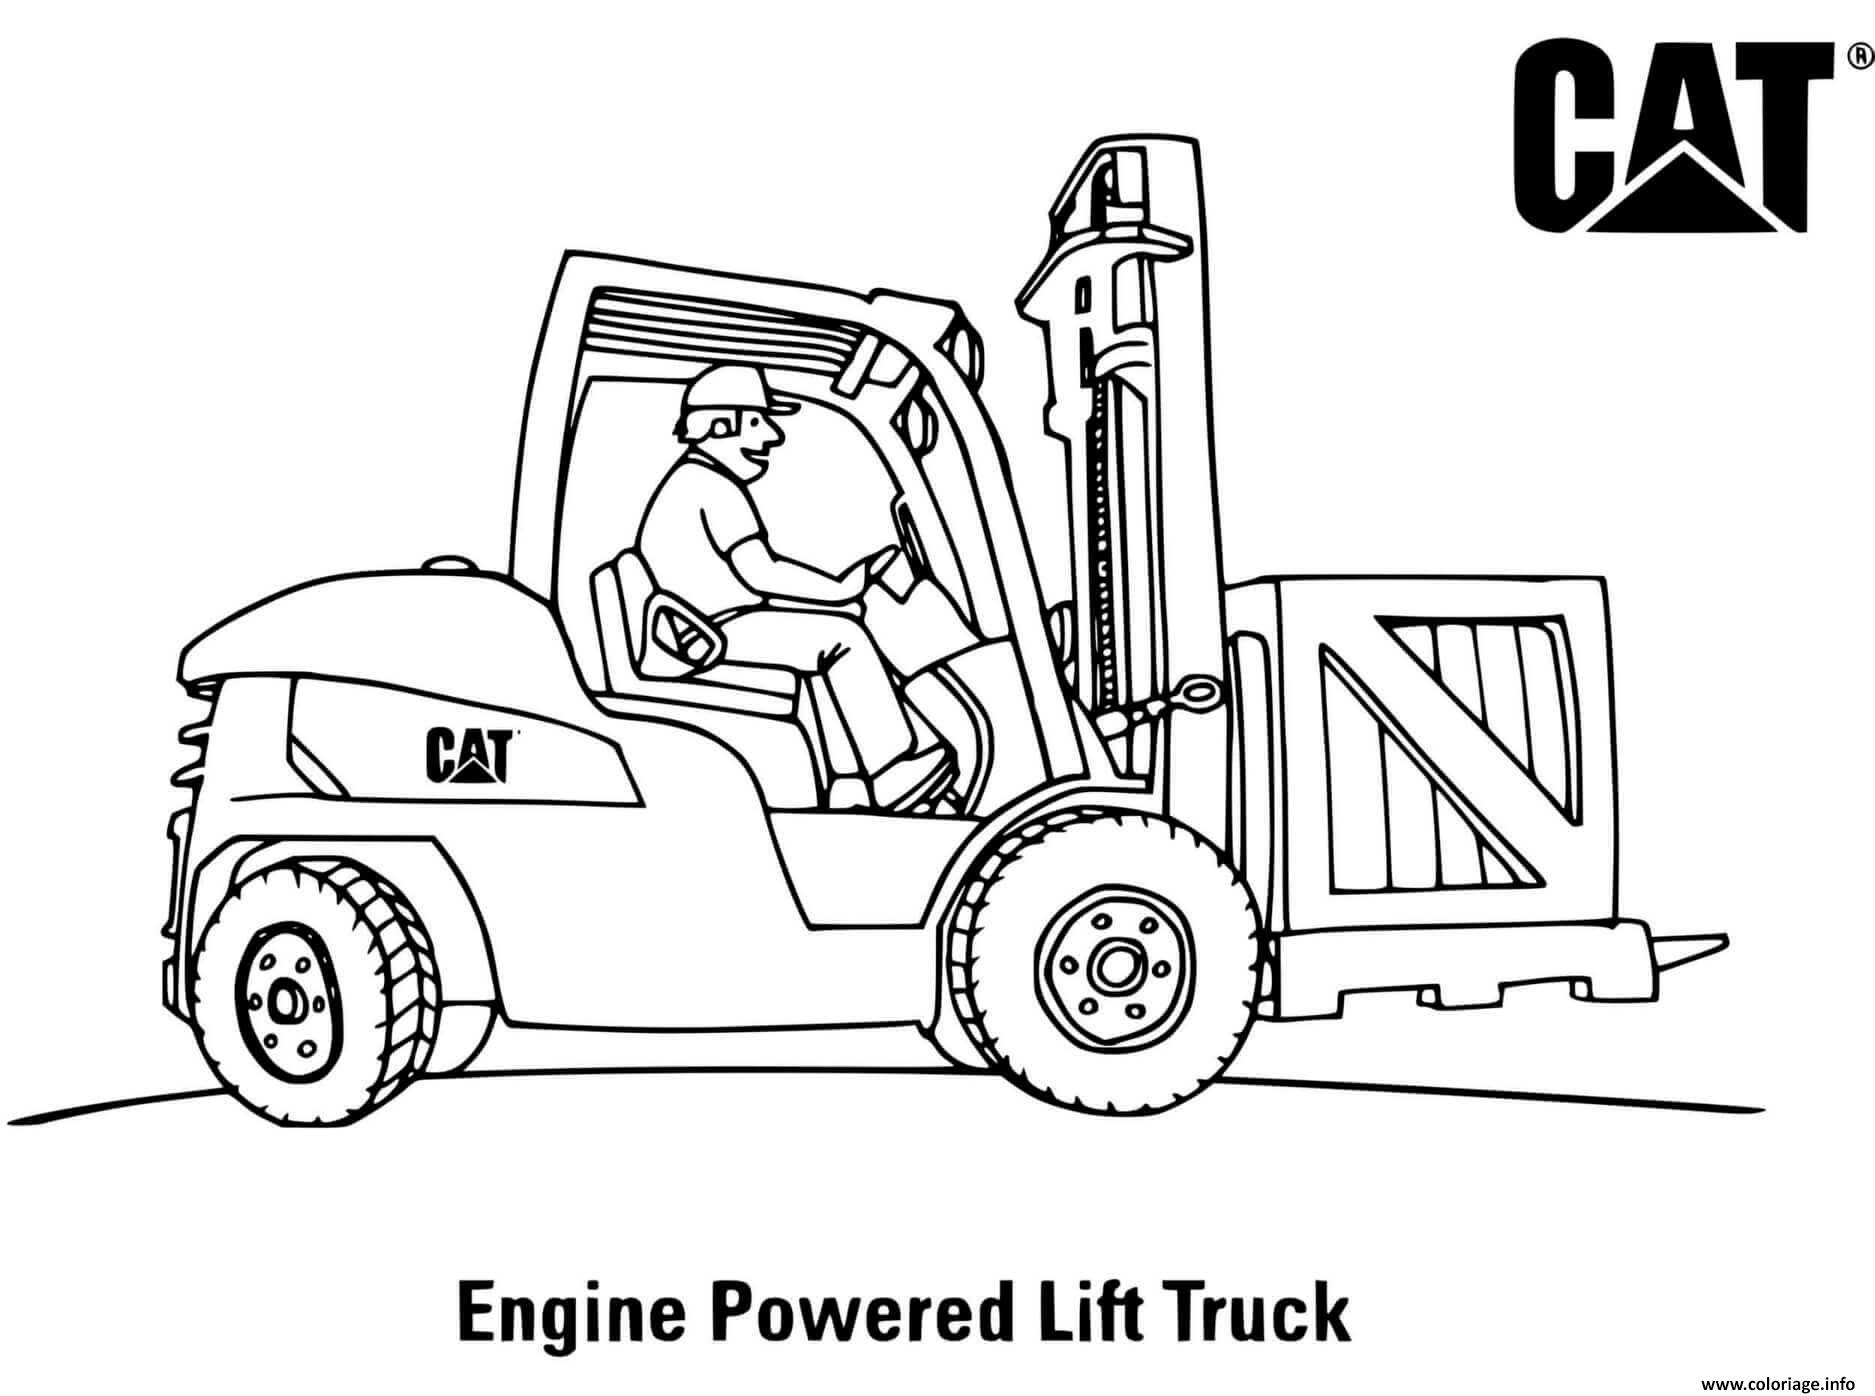 Dessin engine powered lift truck engin chantier Coloriage Gratuit à Imprimer